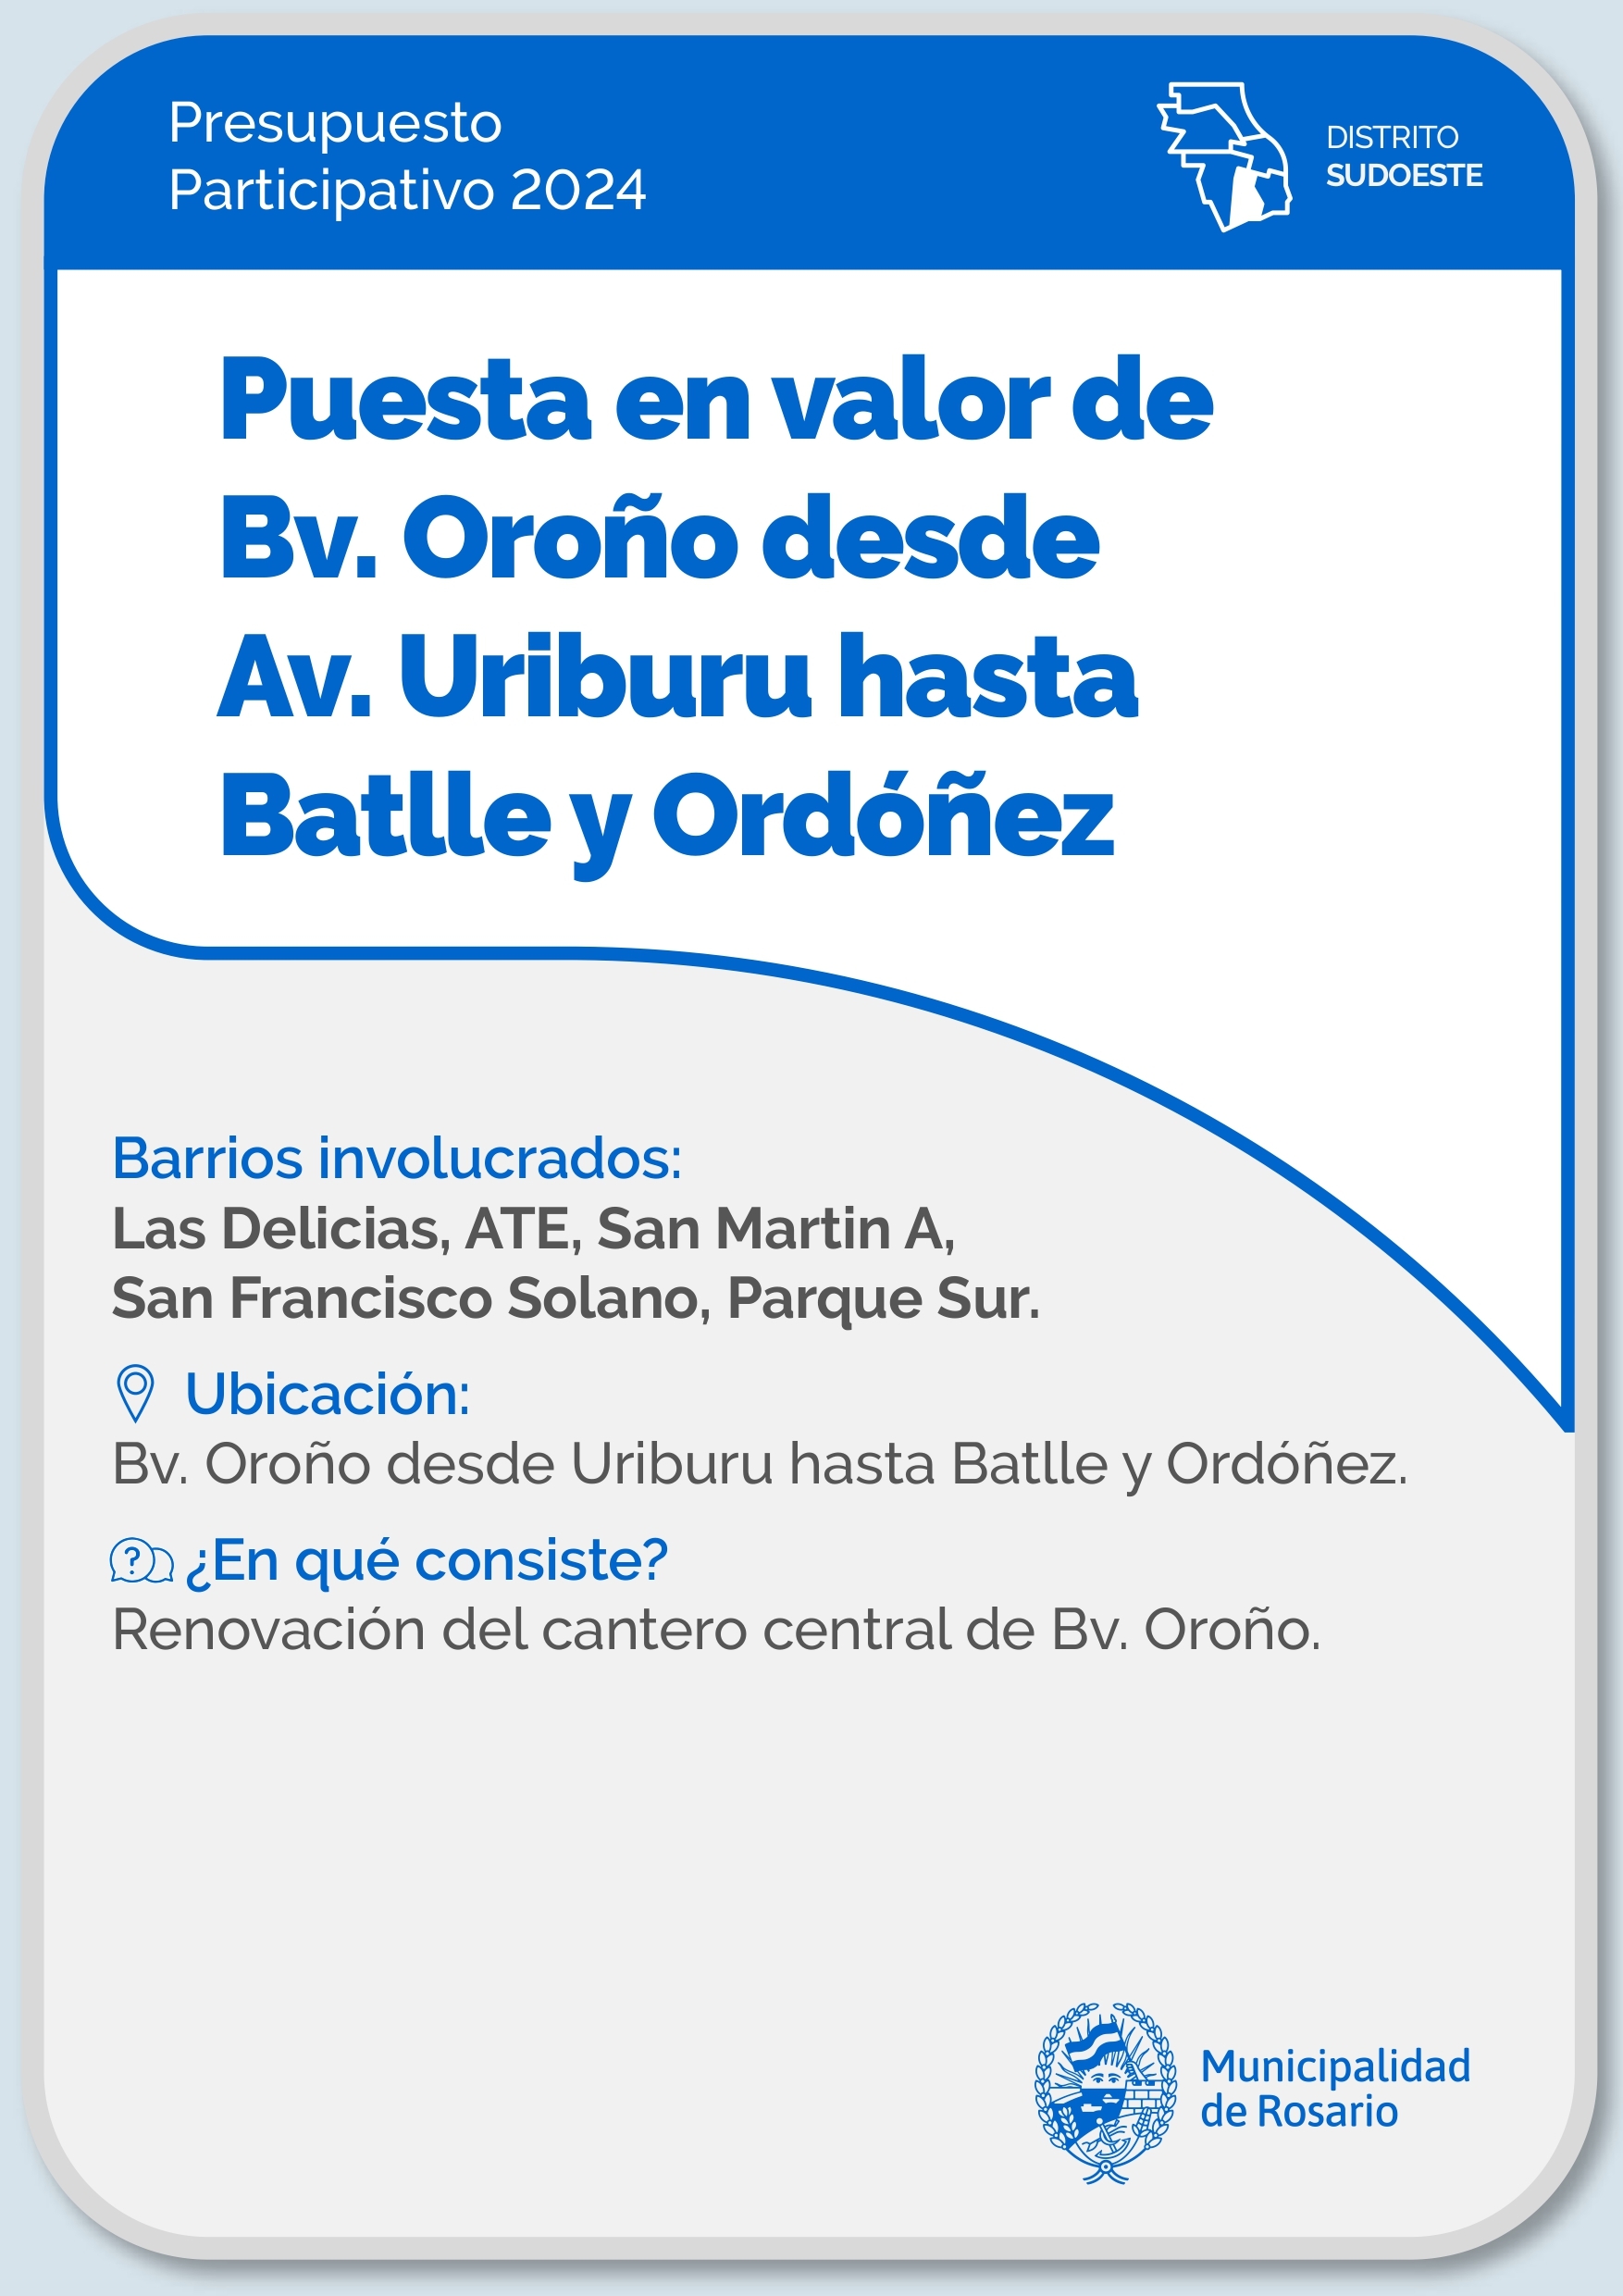 Puesta en valor de Bv. Oroño desde Av. Uriburu hasta Batlle y Ordóñez - Distrito Sudoeste